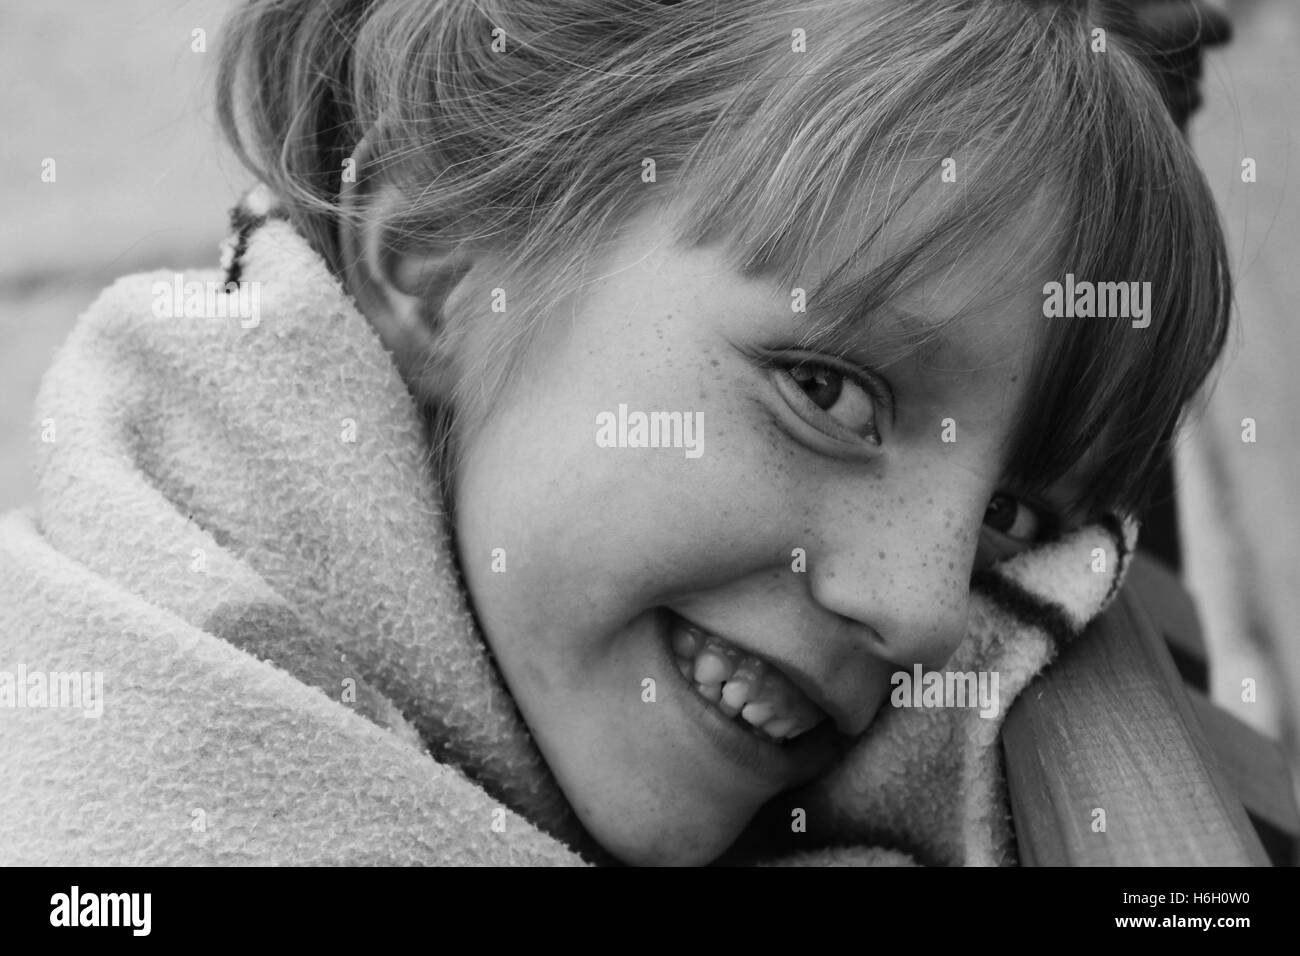 Le noir et blanc portrait de petite fille enveloppée dans une couverture smiling at the camera avec dents montrant Banque D'Images